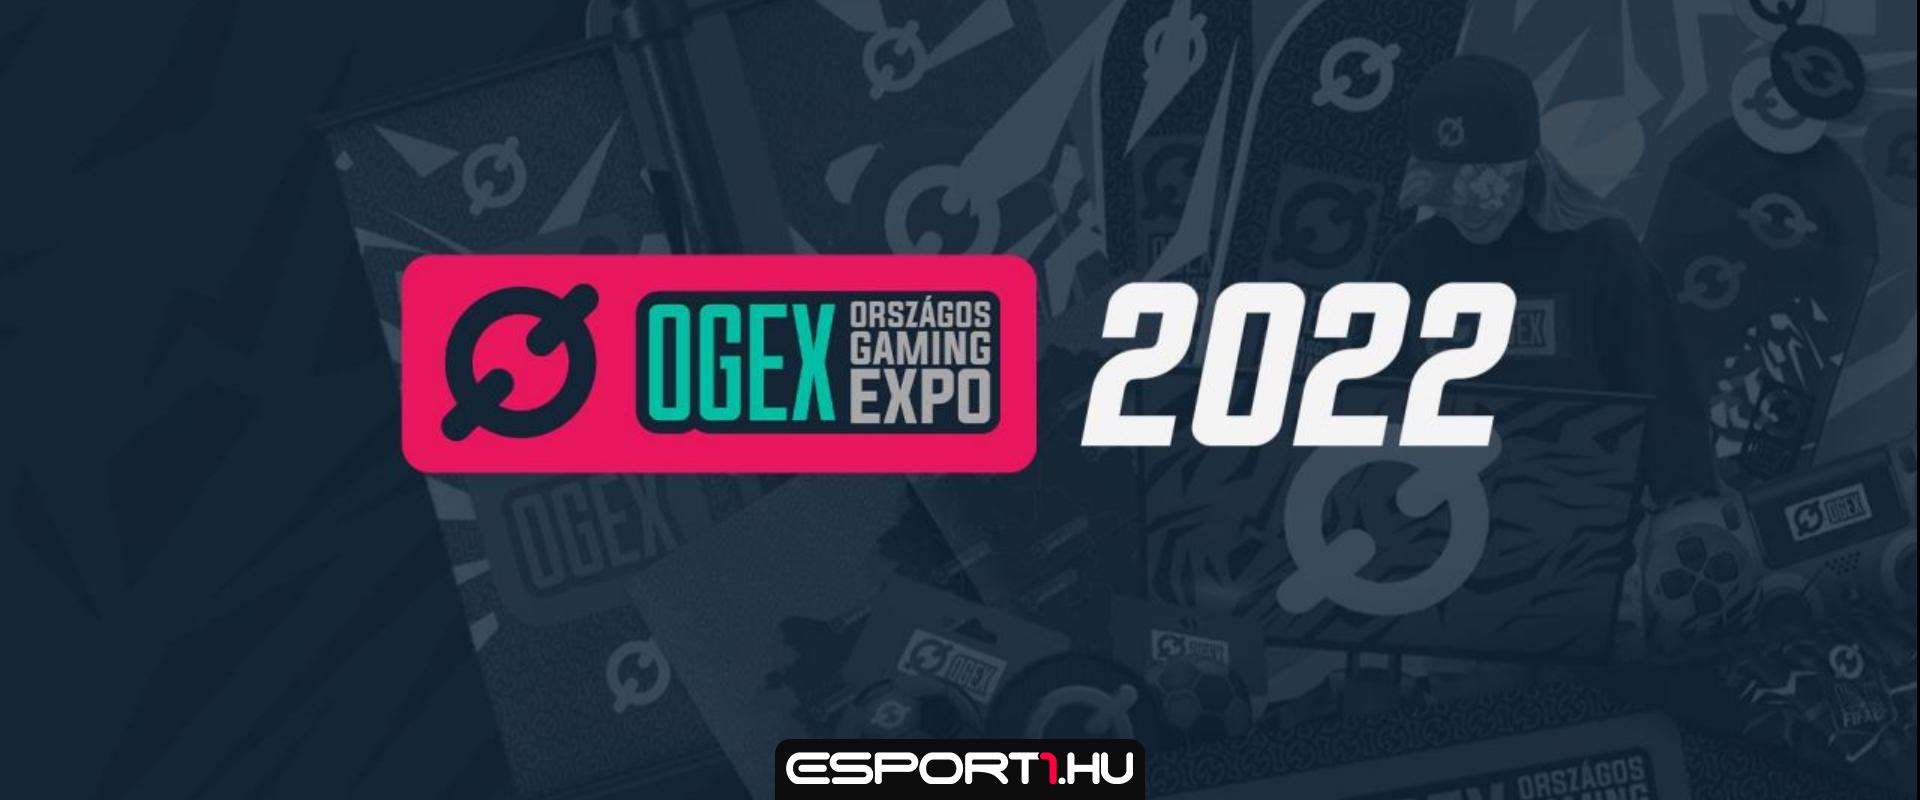 Búcsúzik az Országos Gaming Expó 2022